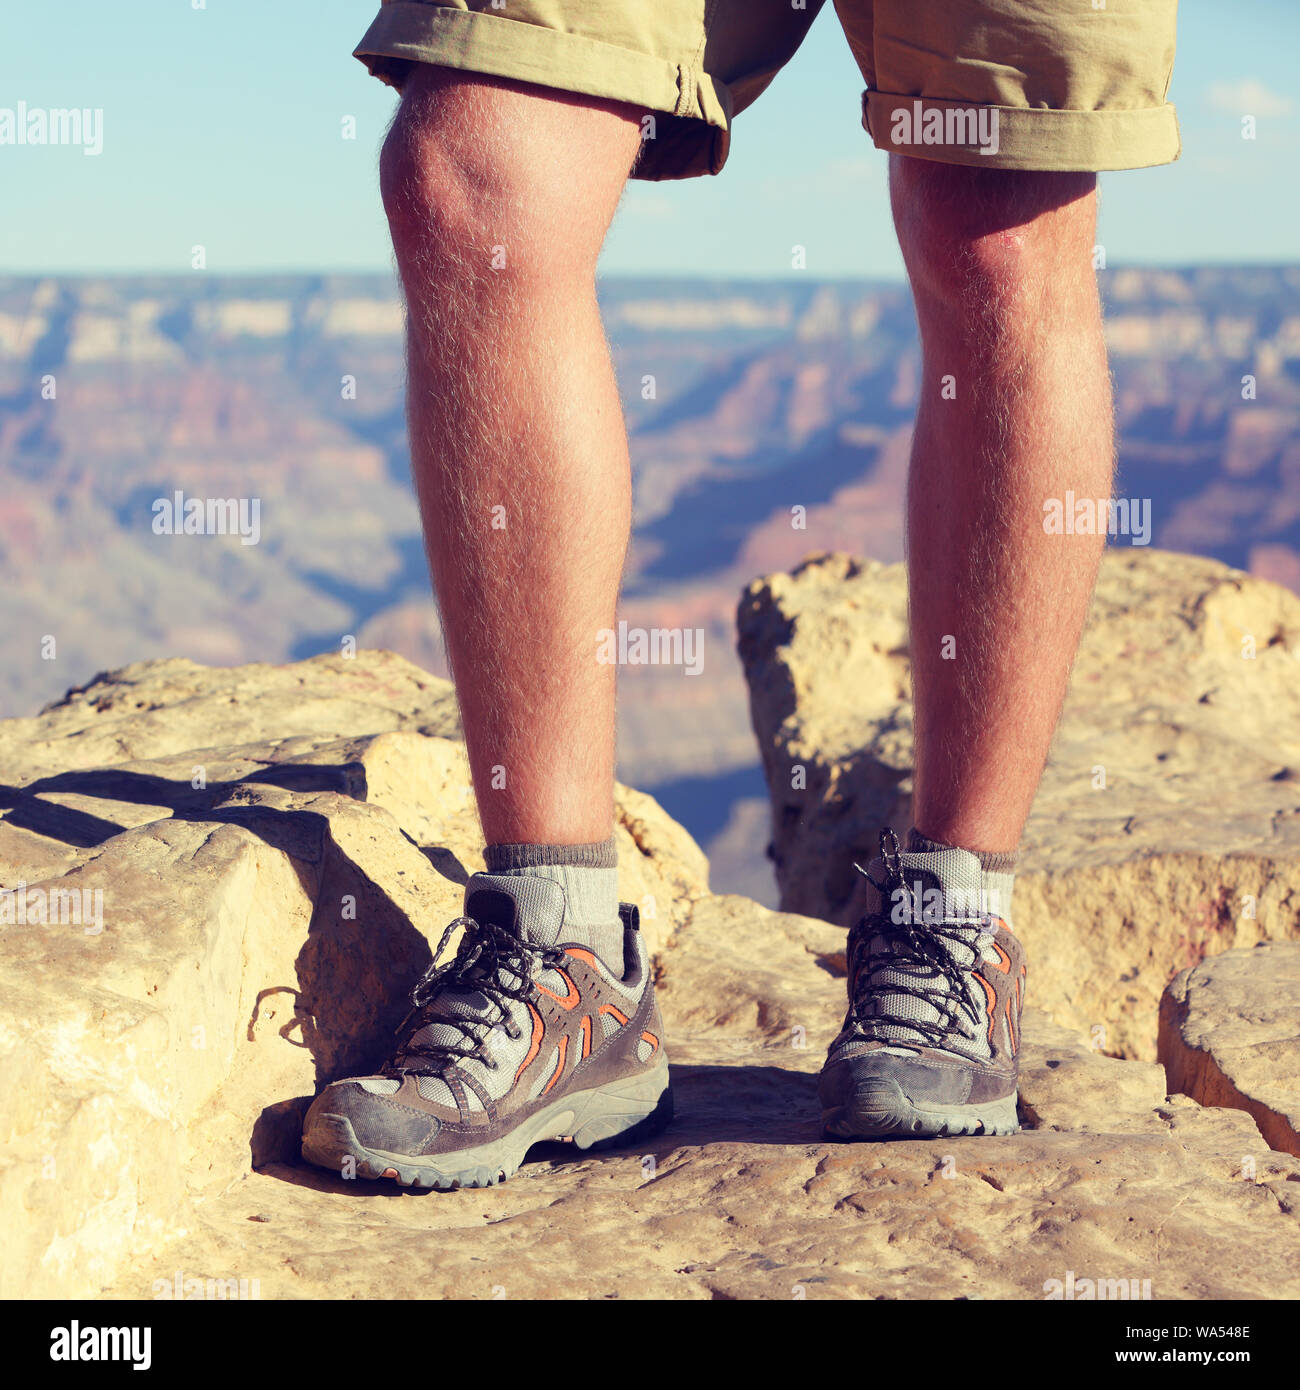 Zapatos para caminatas al aire libre - closeup cosecha de patas macho caminante caminando en calcetines de lana y botas en verano Nature Trail, Grand Canyon fondo. Un estilo de vida